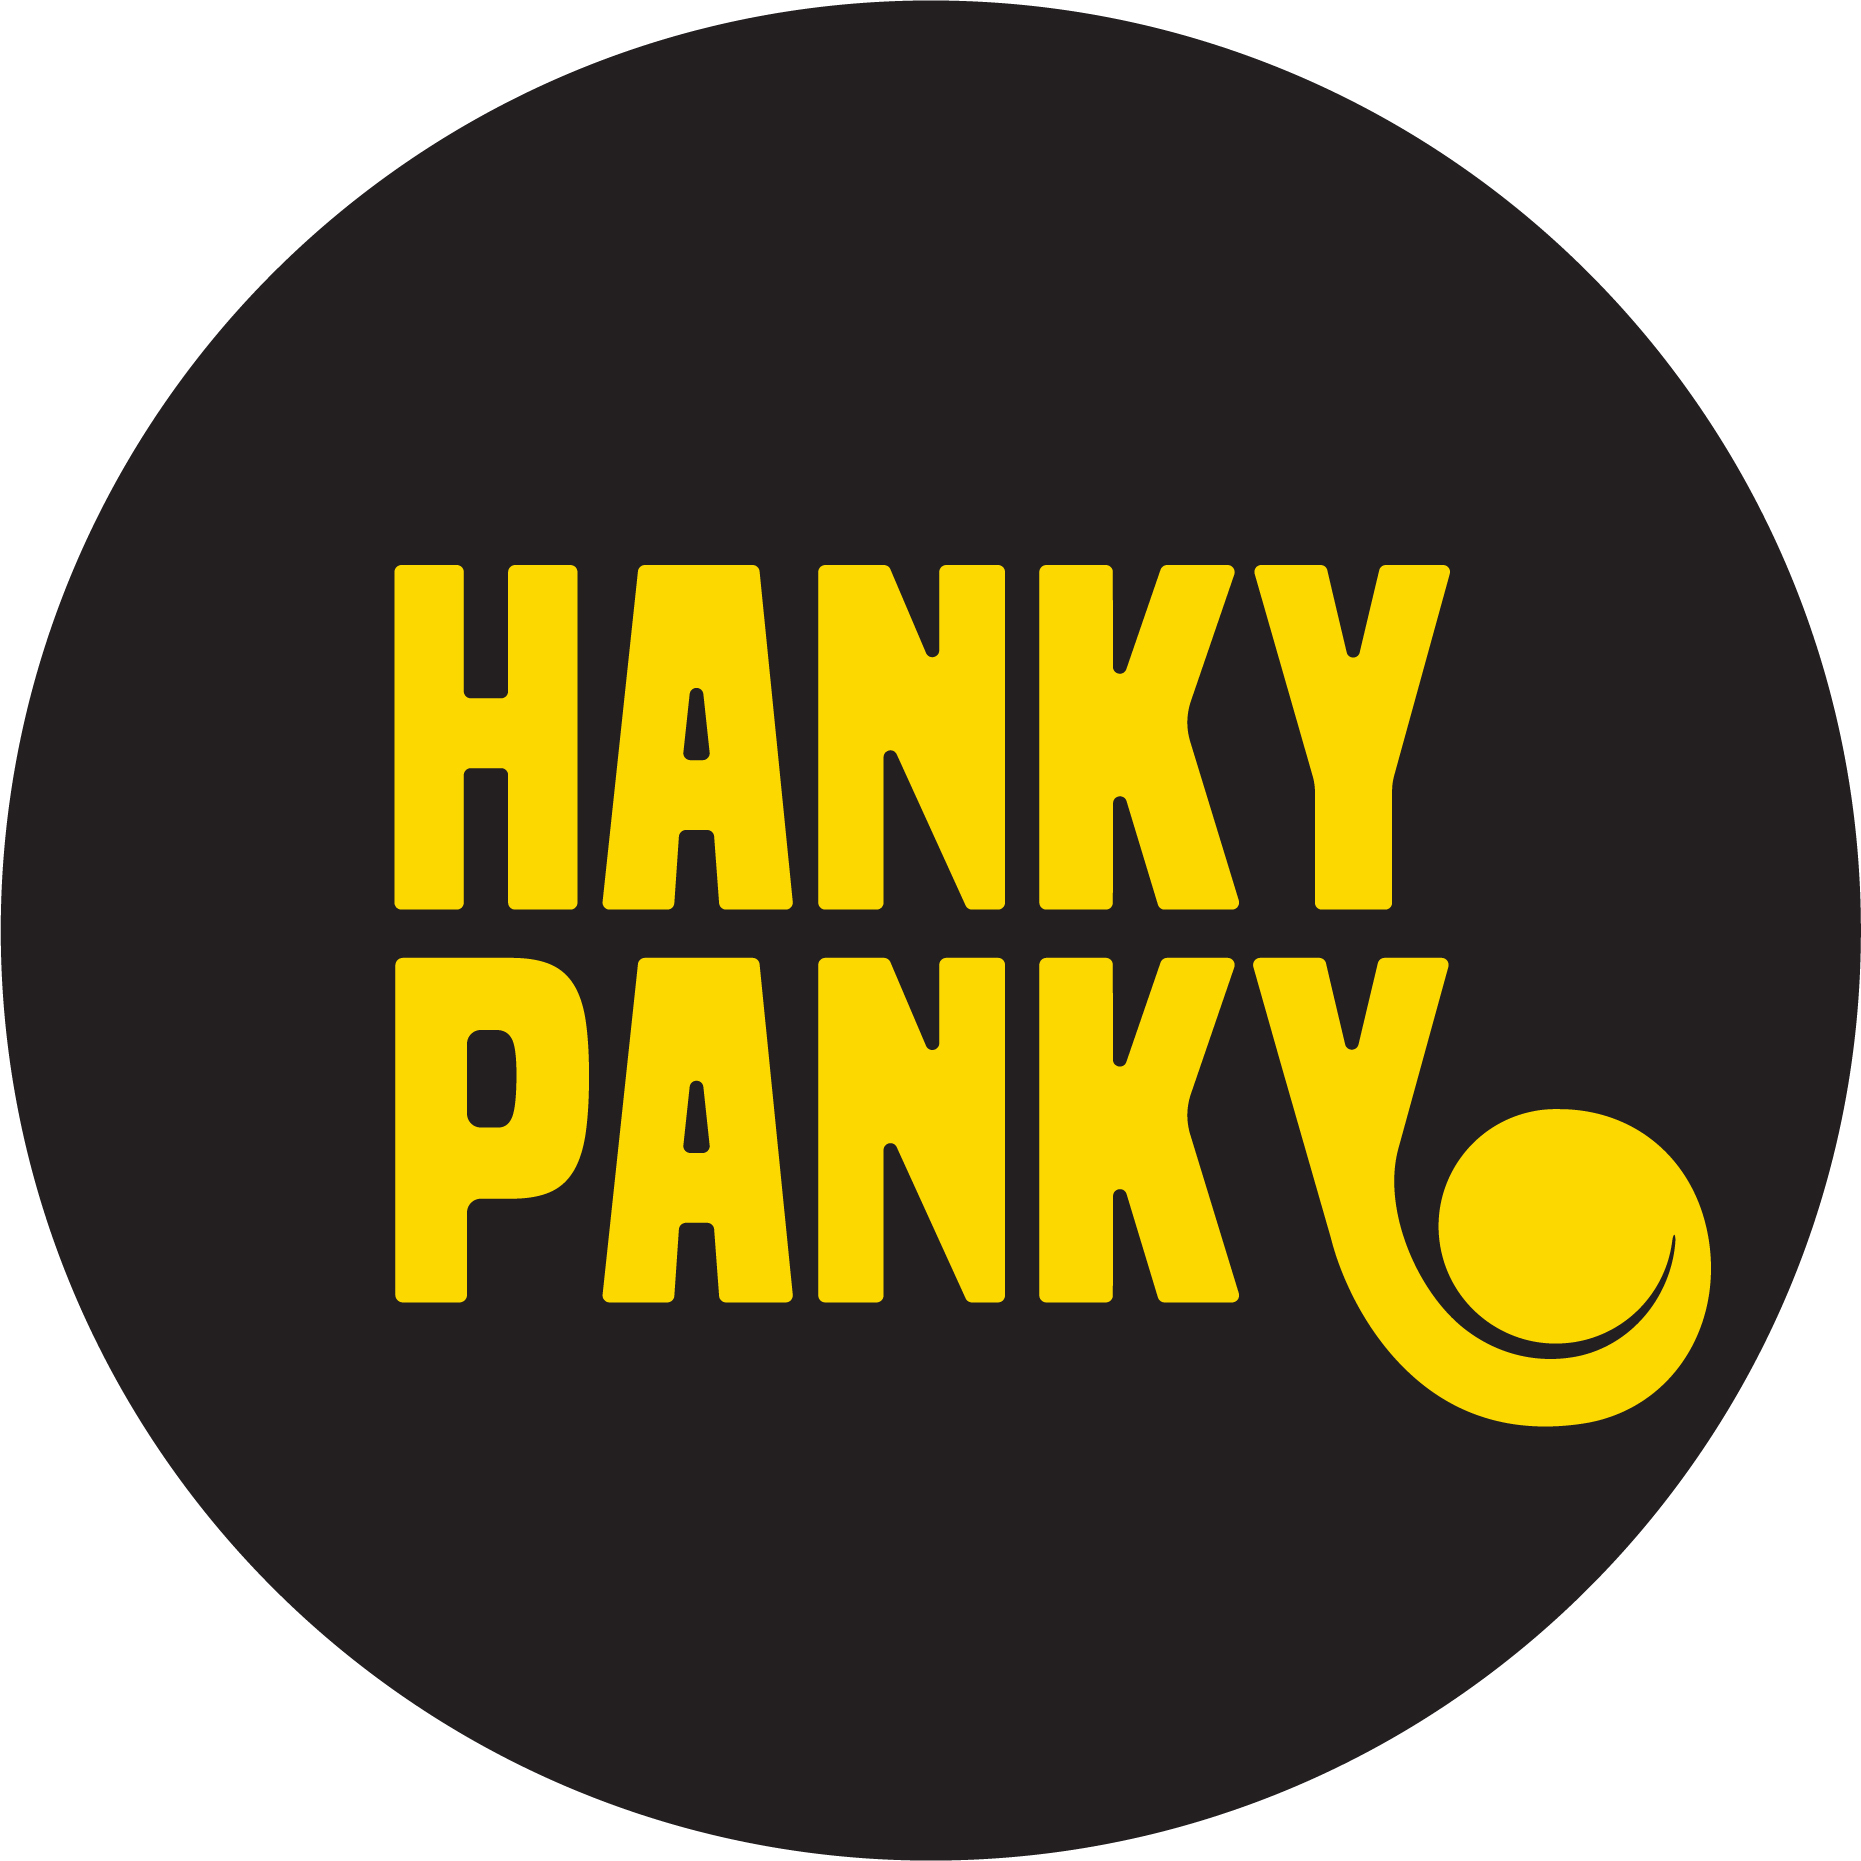 Hanky Panky Pancakes logo